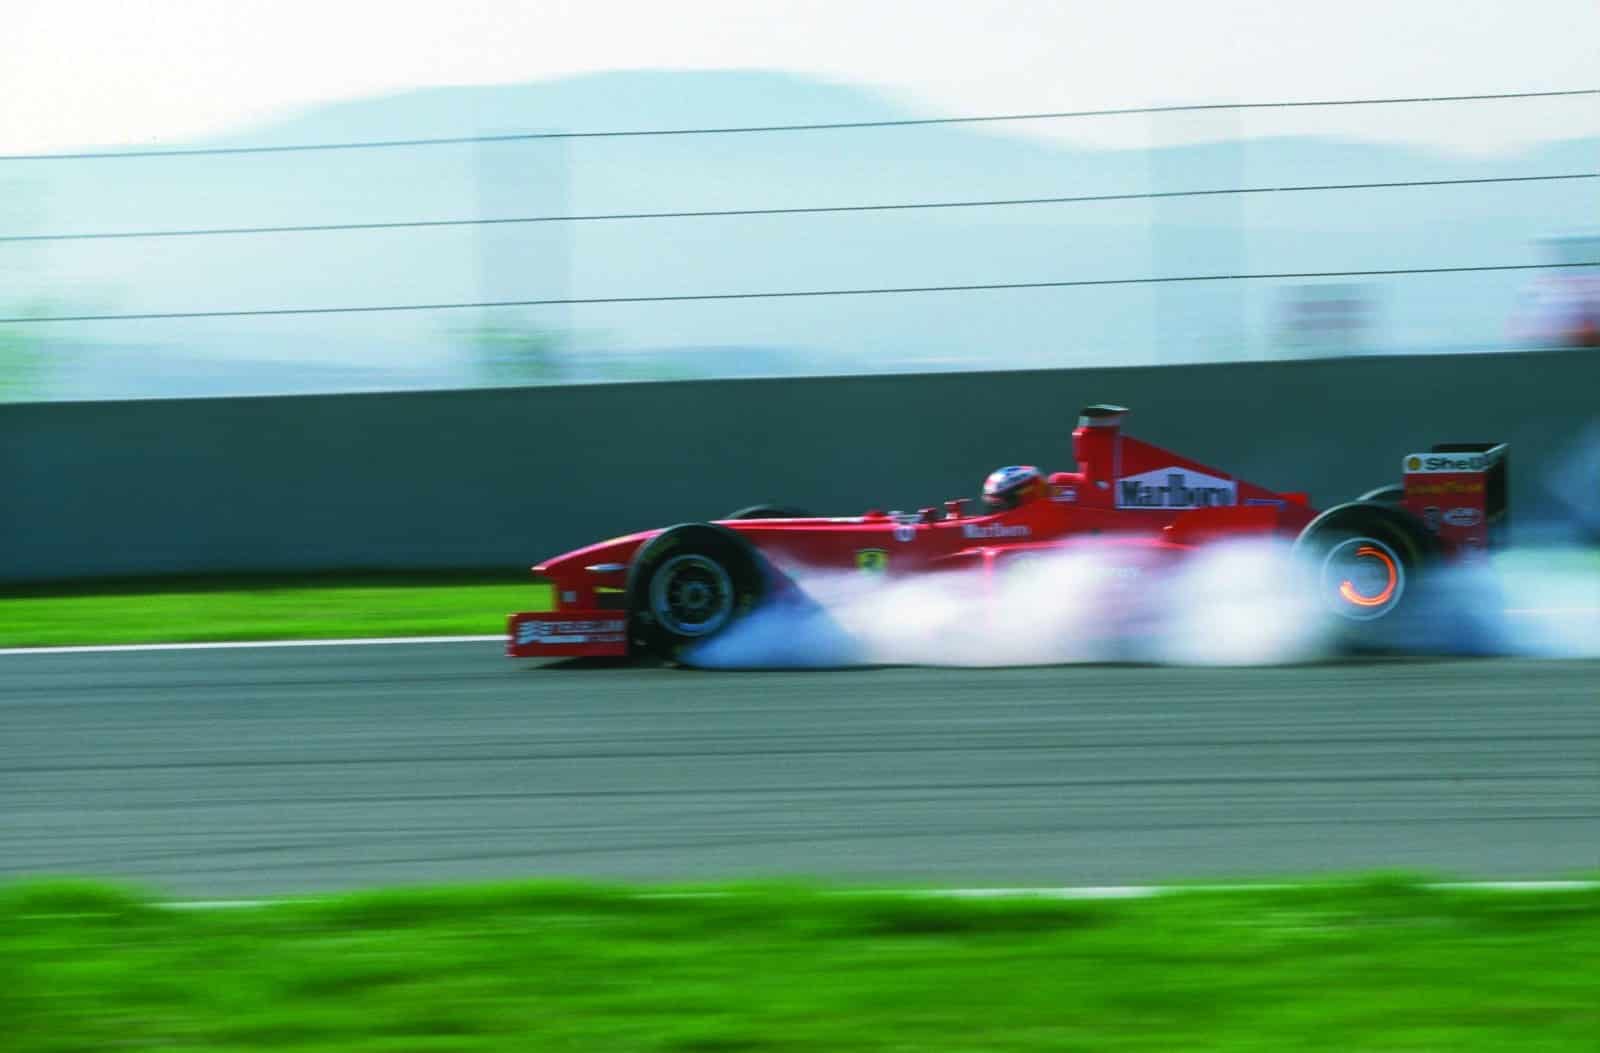 Michael-Schumacher-locks-up-Ferrari-F300-in-a-cloud-of-smoke-scaled